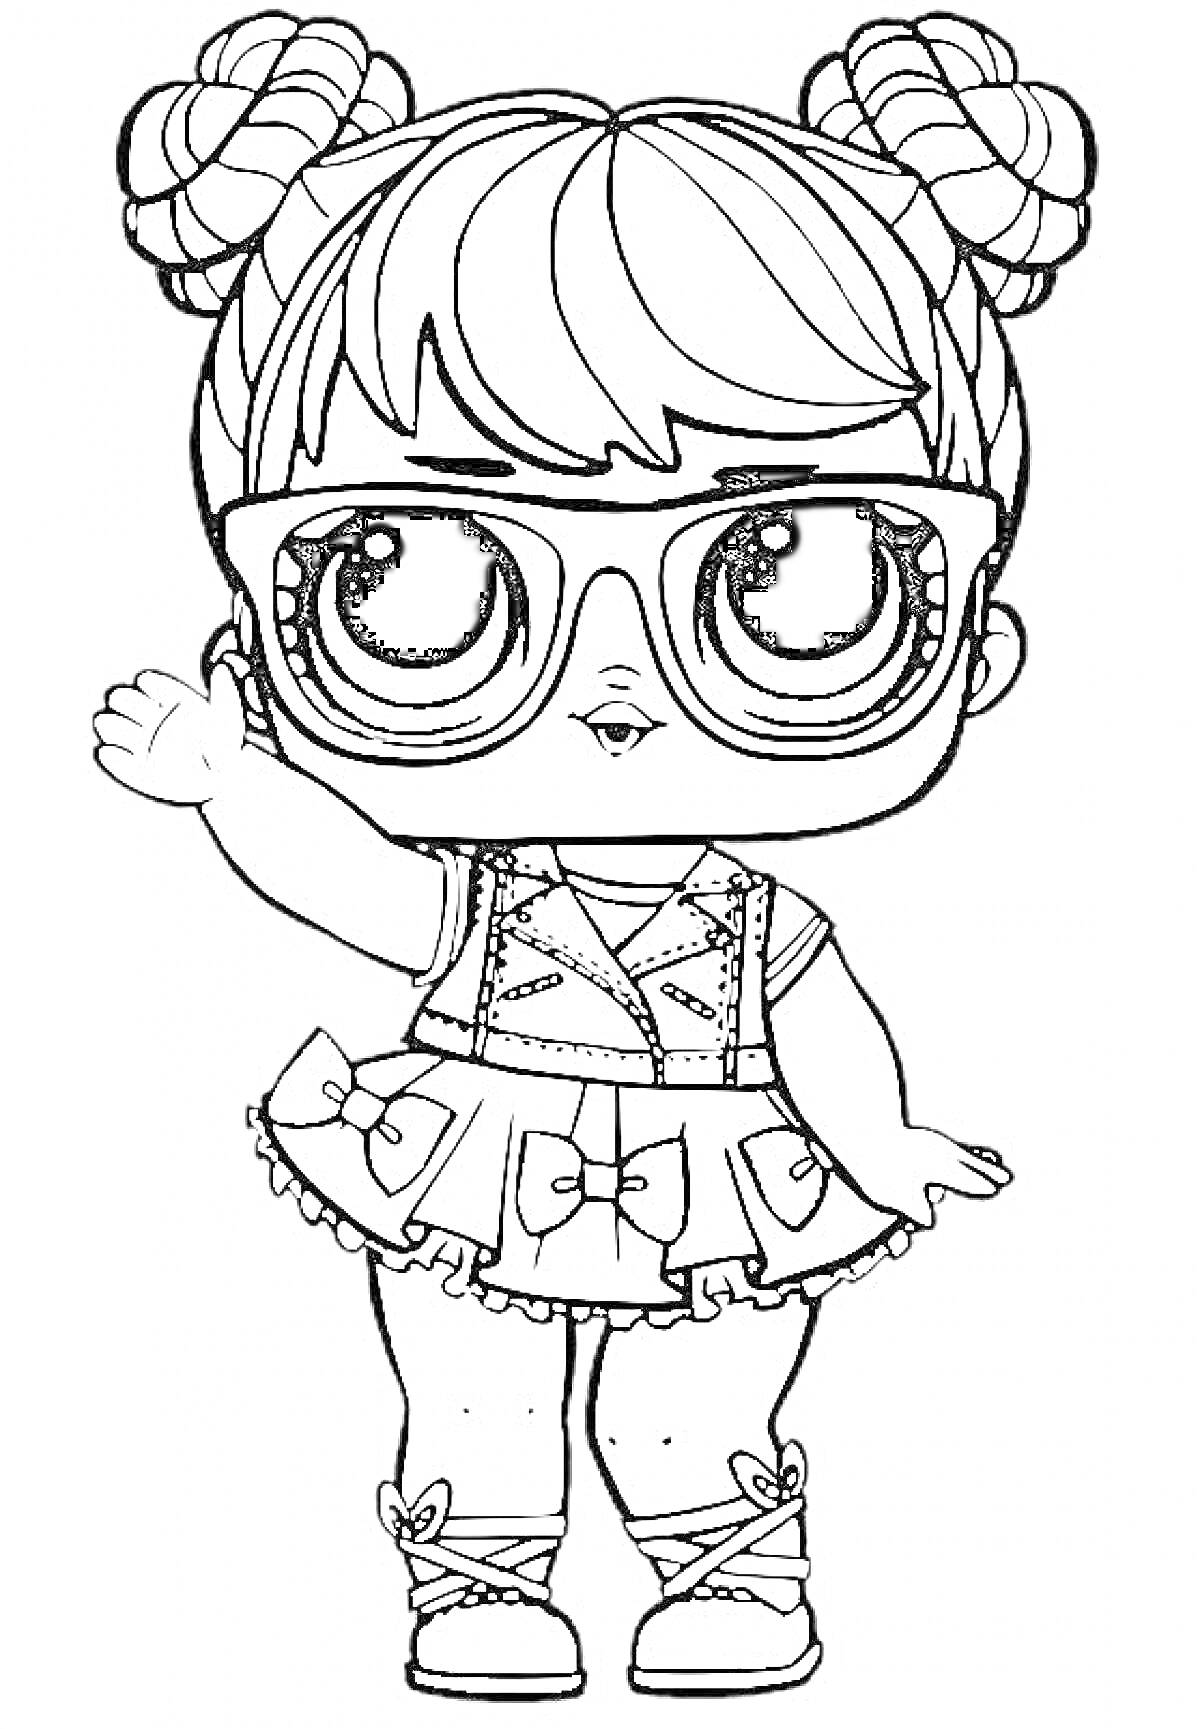 Раскраска Кукла Лол с большими глазами, в очках, с прической в виде двух пучков, в жилете и юбке с бантами.